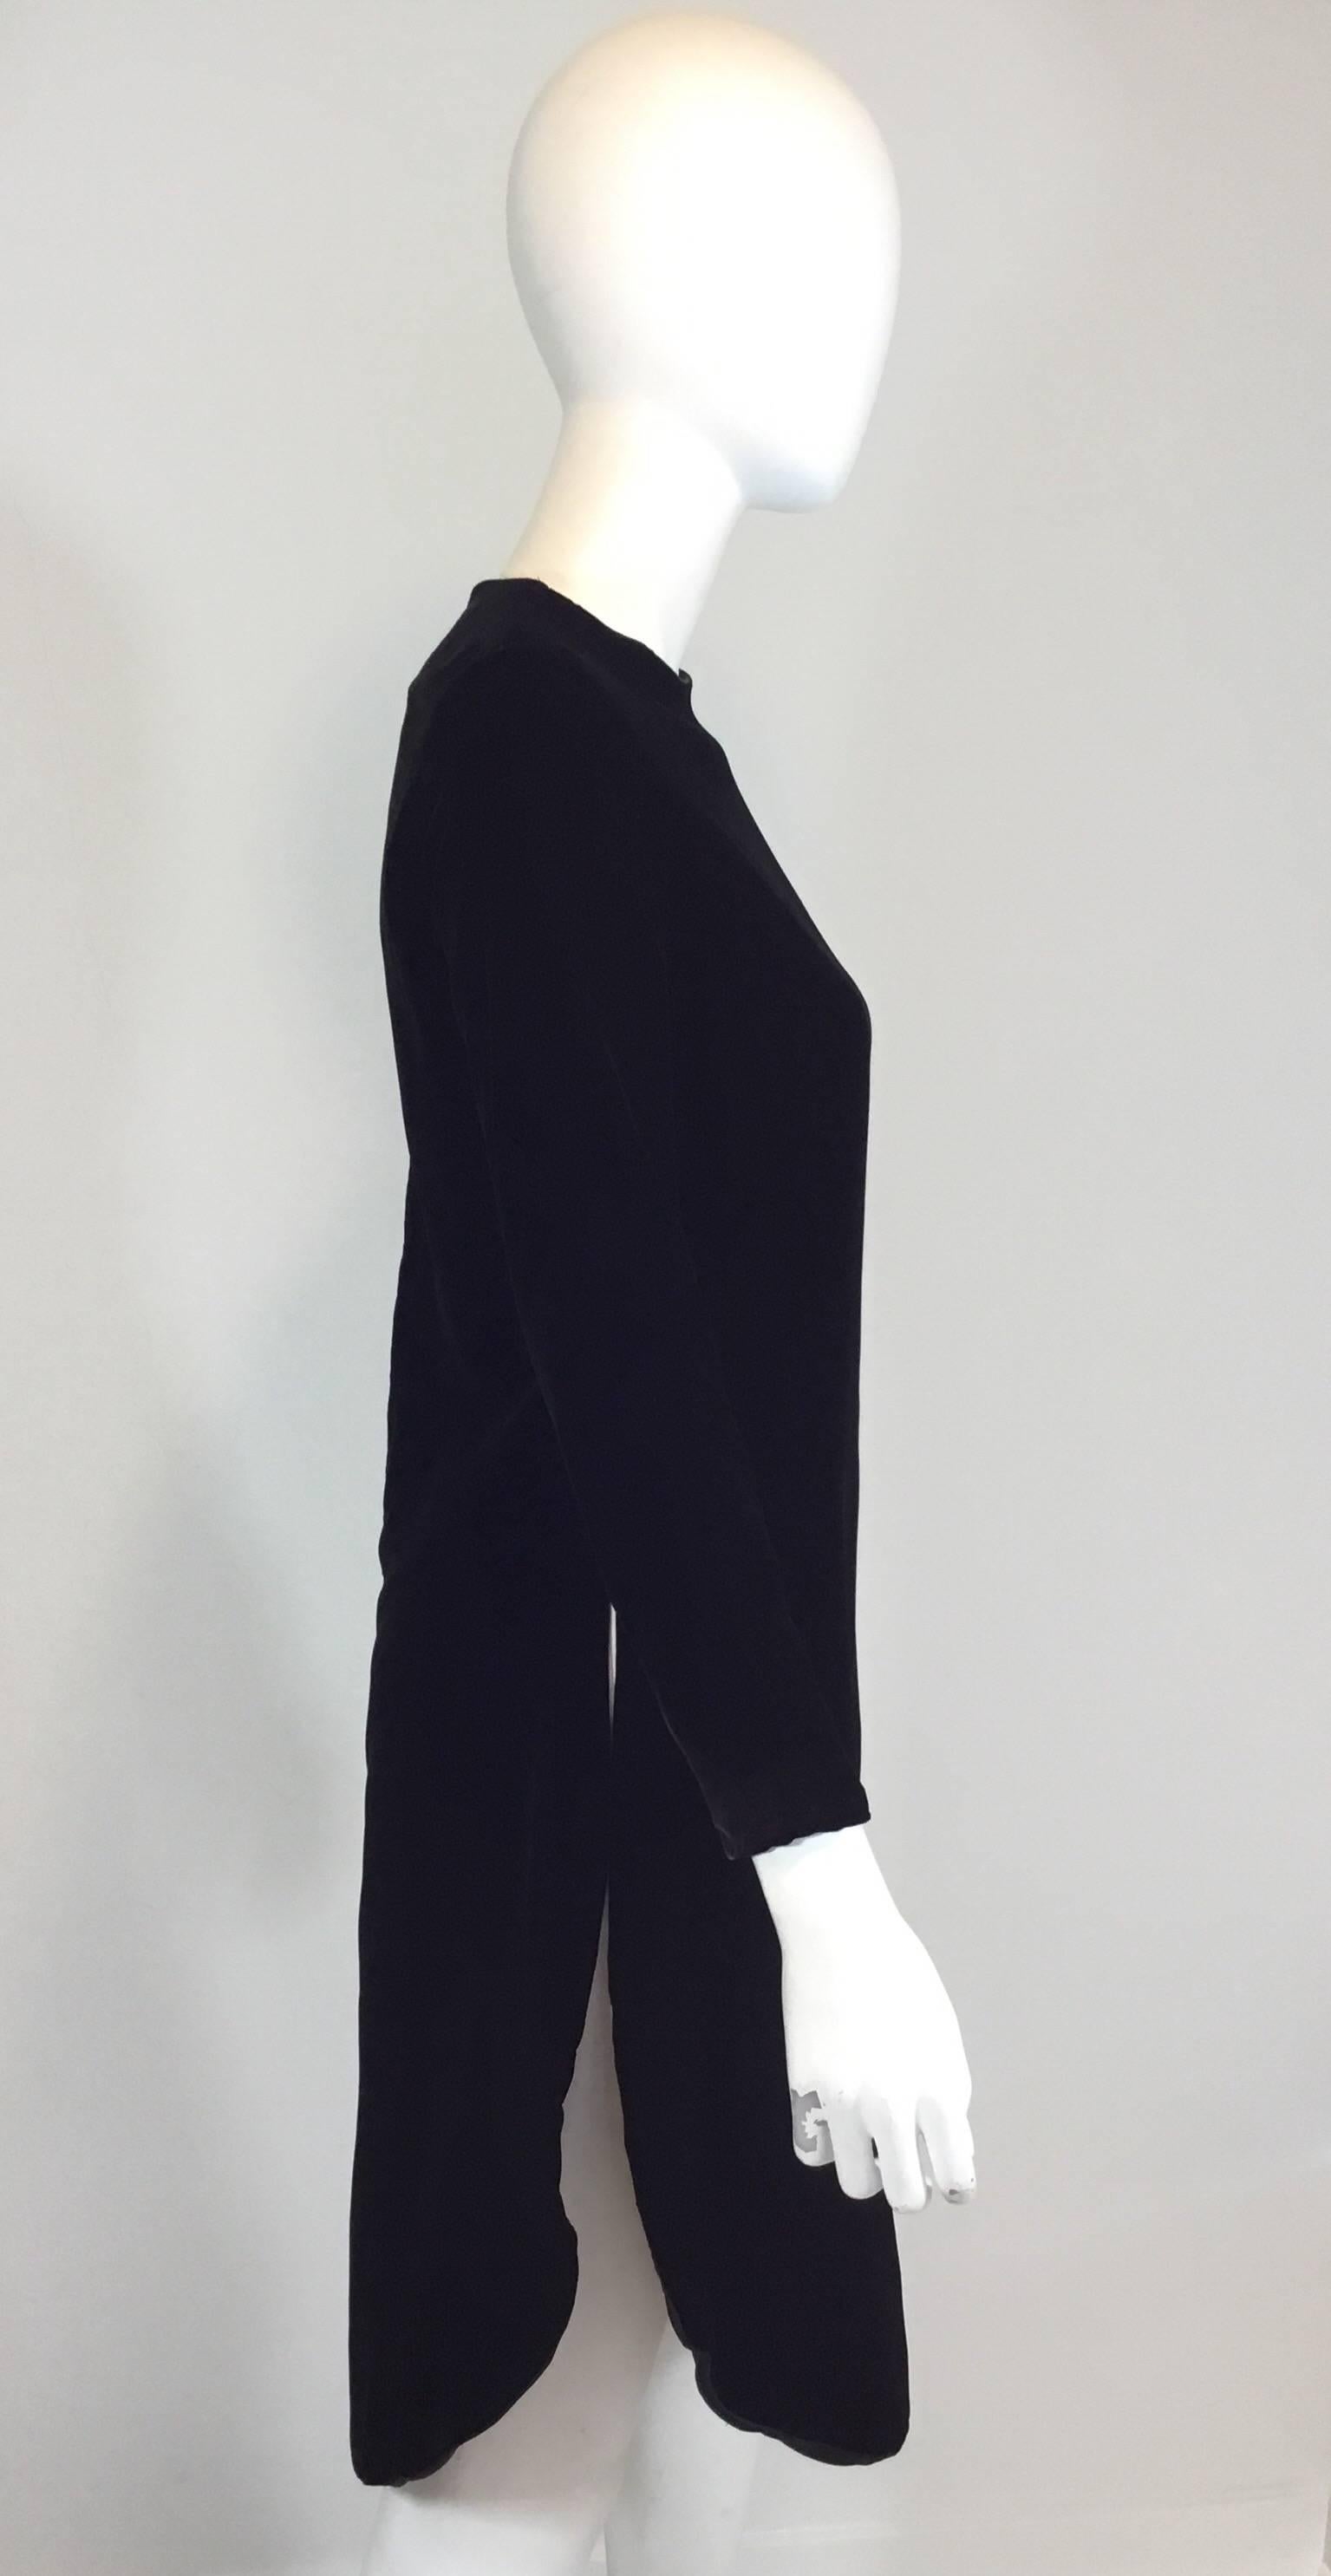 Robe tunique vintage Pierre Cardin en velours noir avec des fentes hautes sur les côtés et un ourlet arrondi. Fermeture à glissière au dos. La robe est entièrement doublée.

buste 36''
manches 22''
taille 33''
hanches 38''
longueur 39''